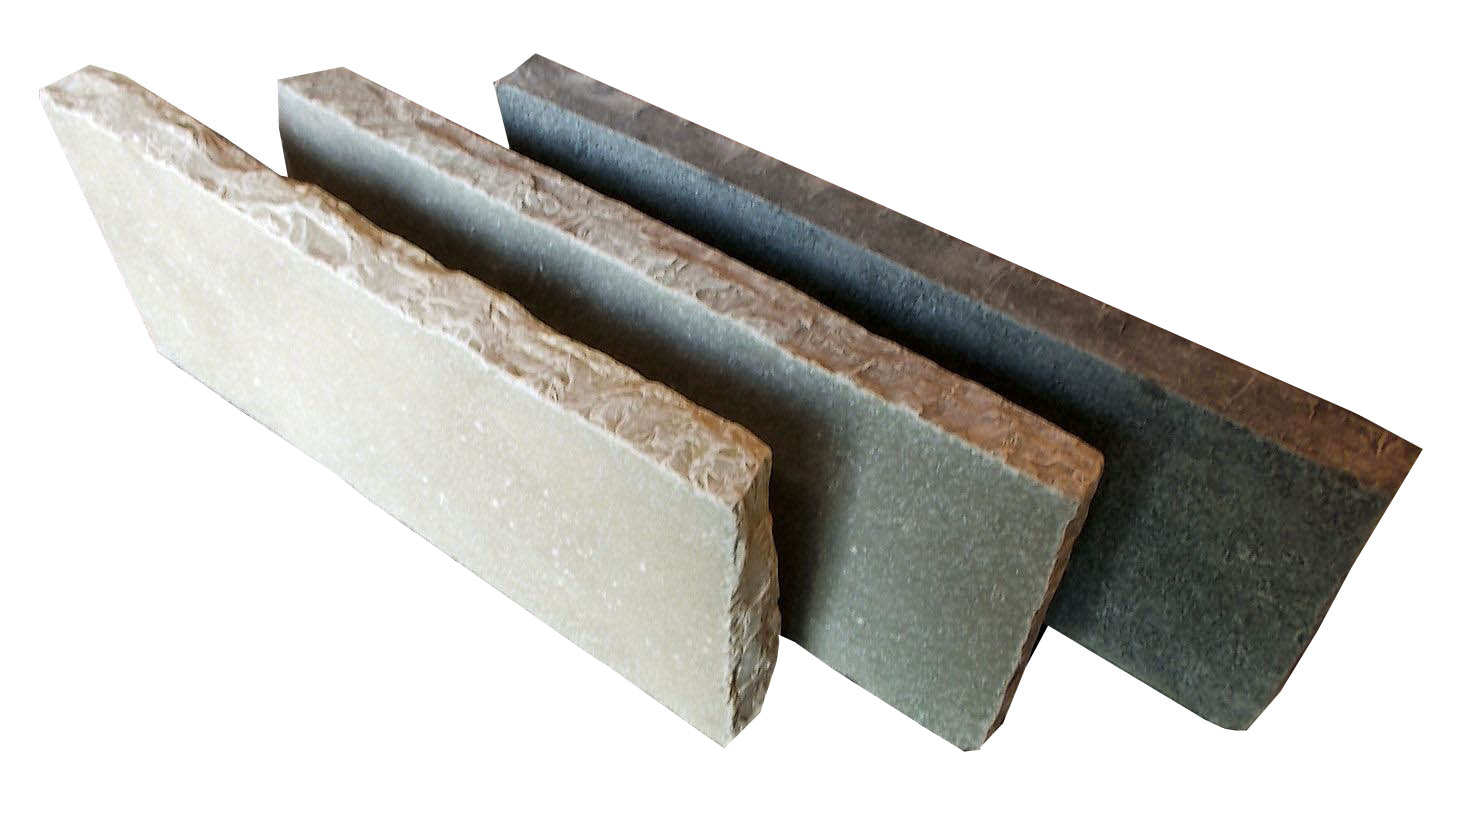 bordure-calcaire-indian-50x20x3-5cm-yellow-bord-clive-edycem-0